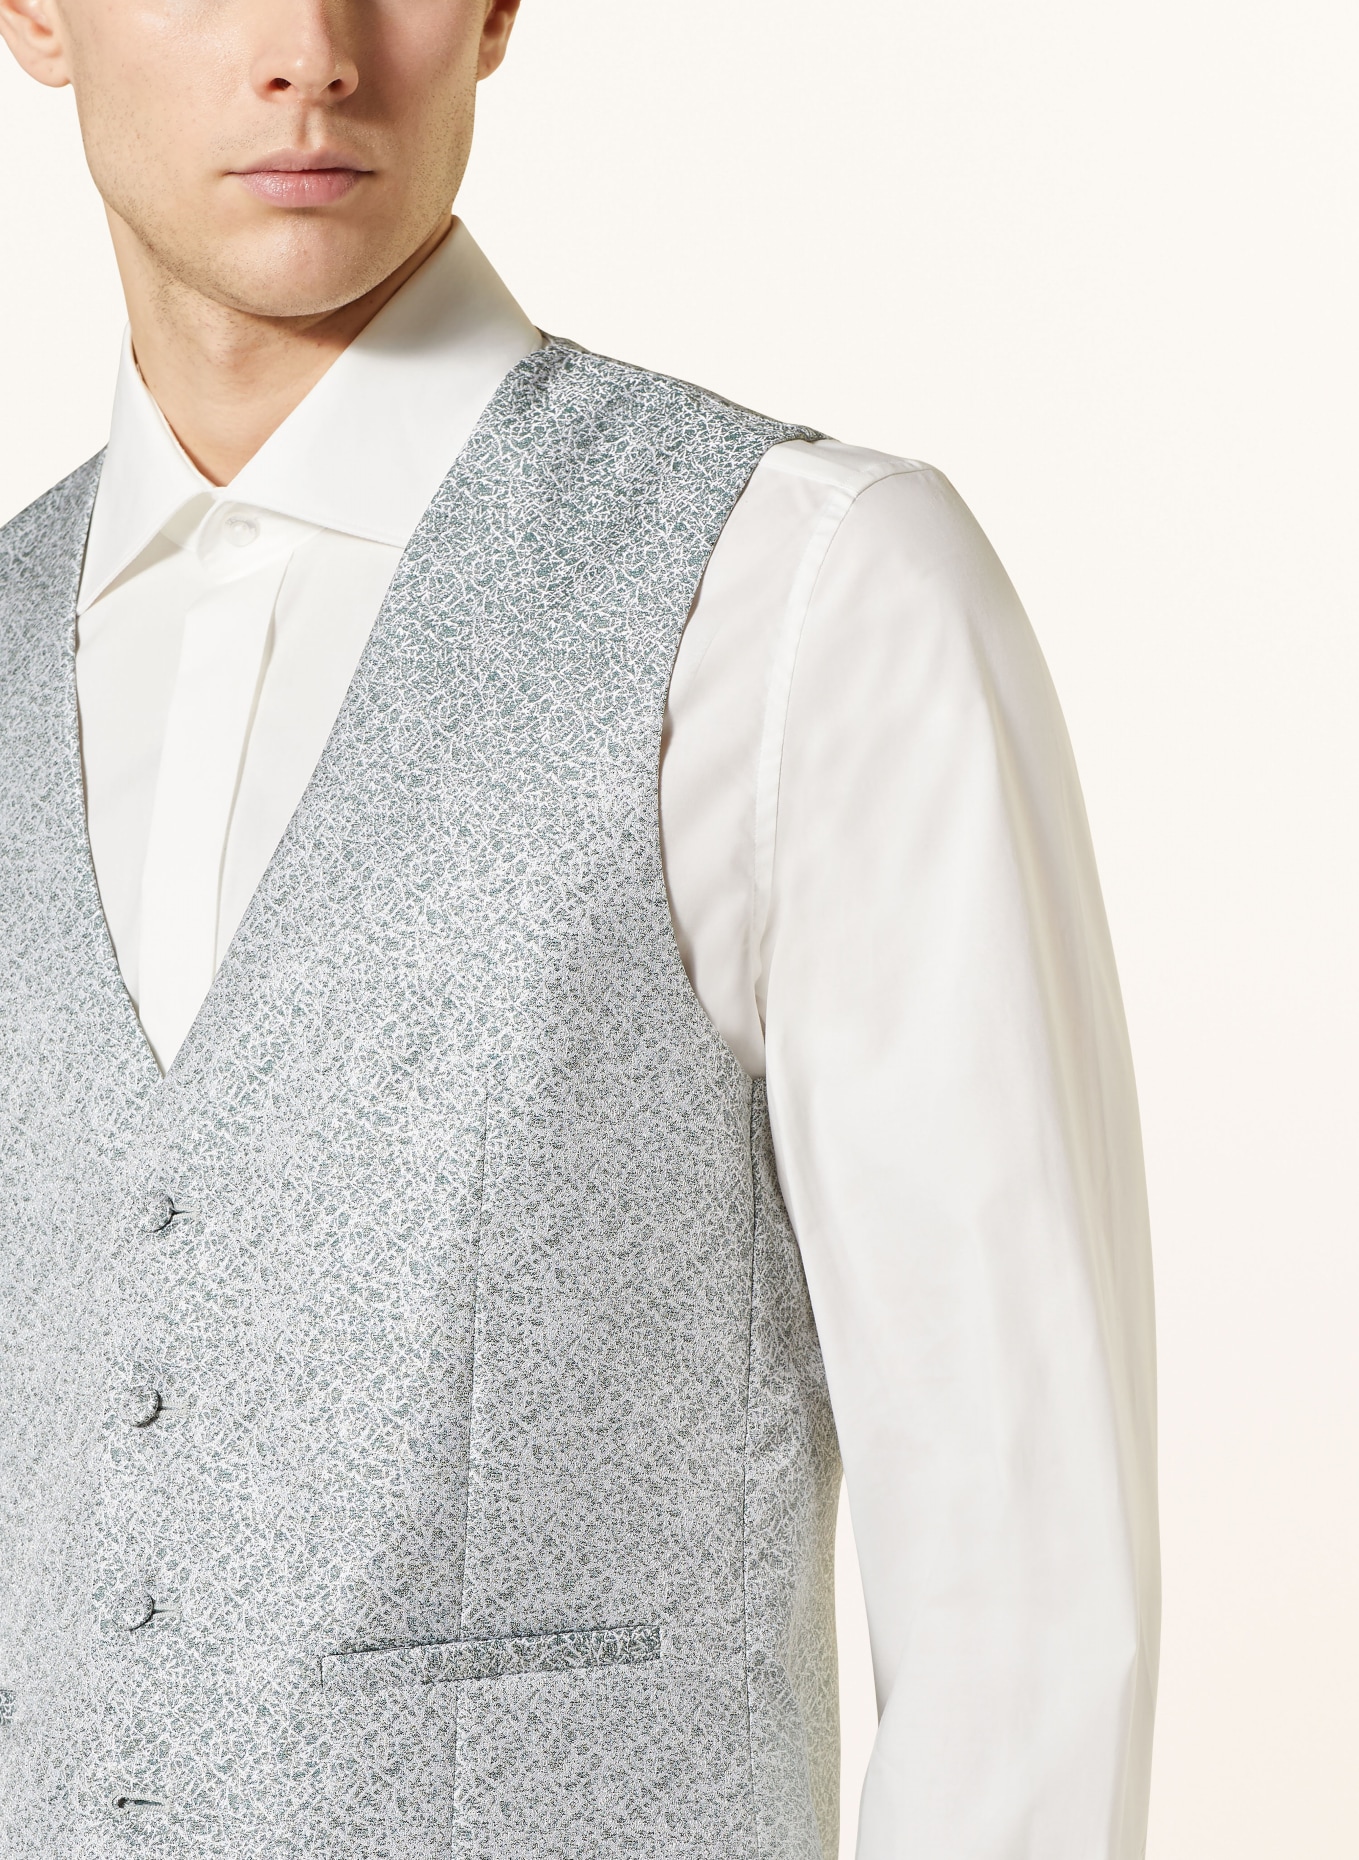 WILVORST Vest extra slim fit, Color: 040 Grün gemustert (Image 5)